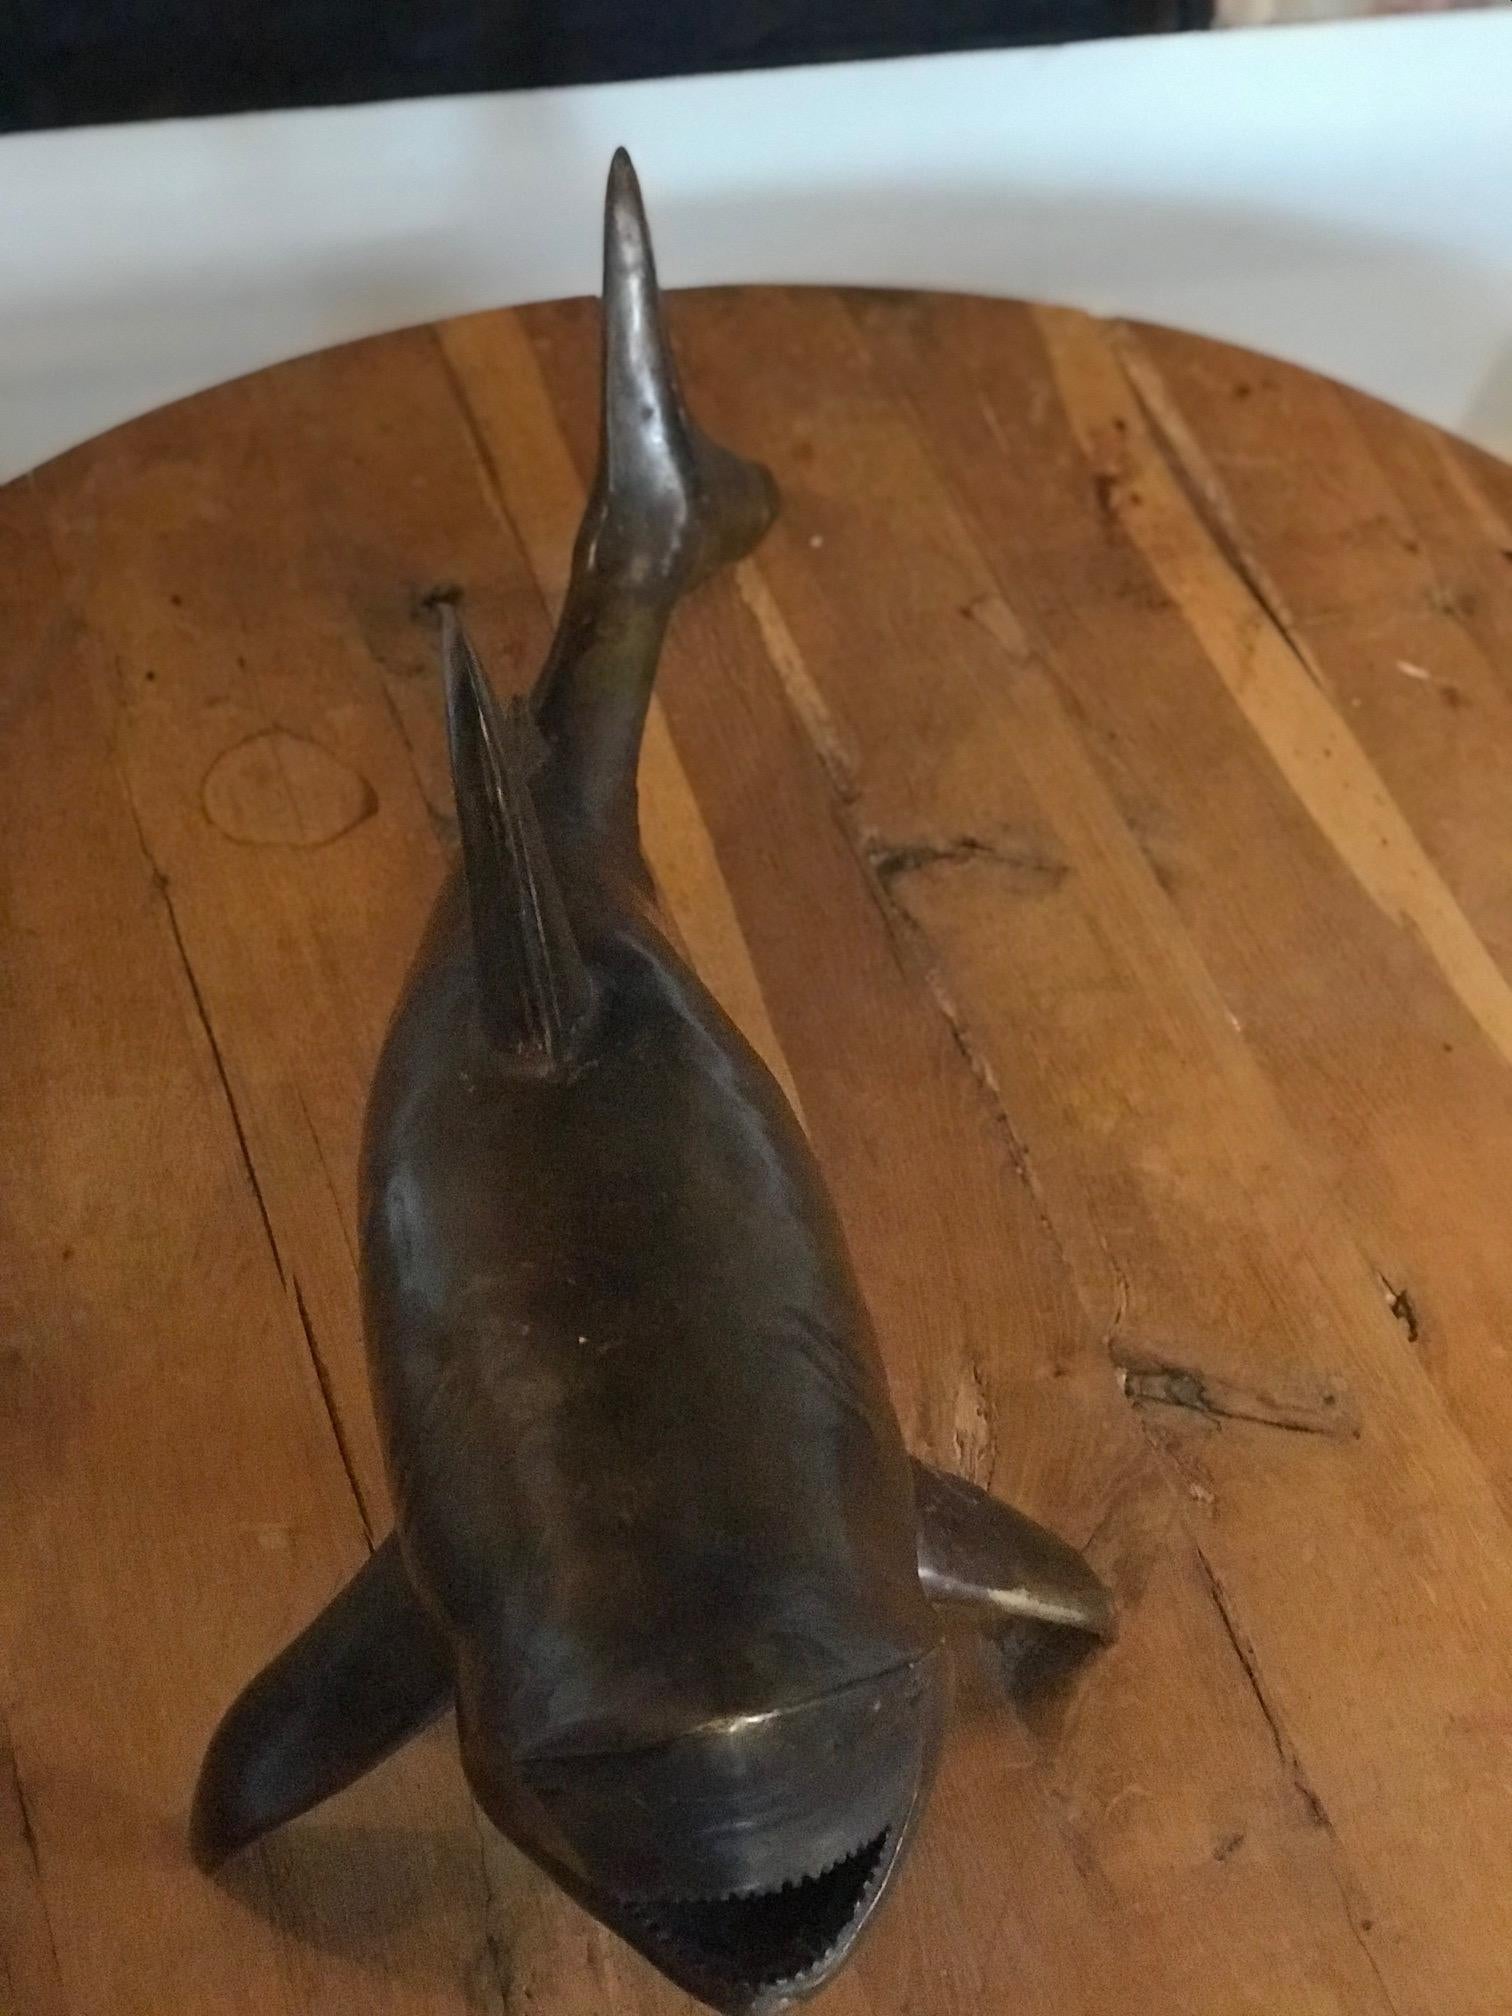 hammerhead shark sculpture made of hammers